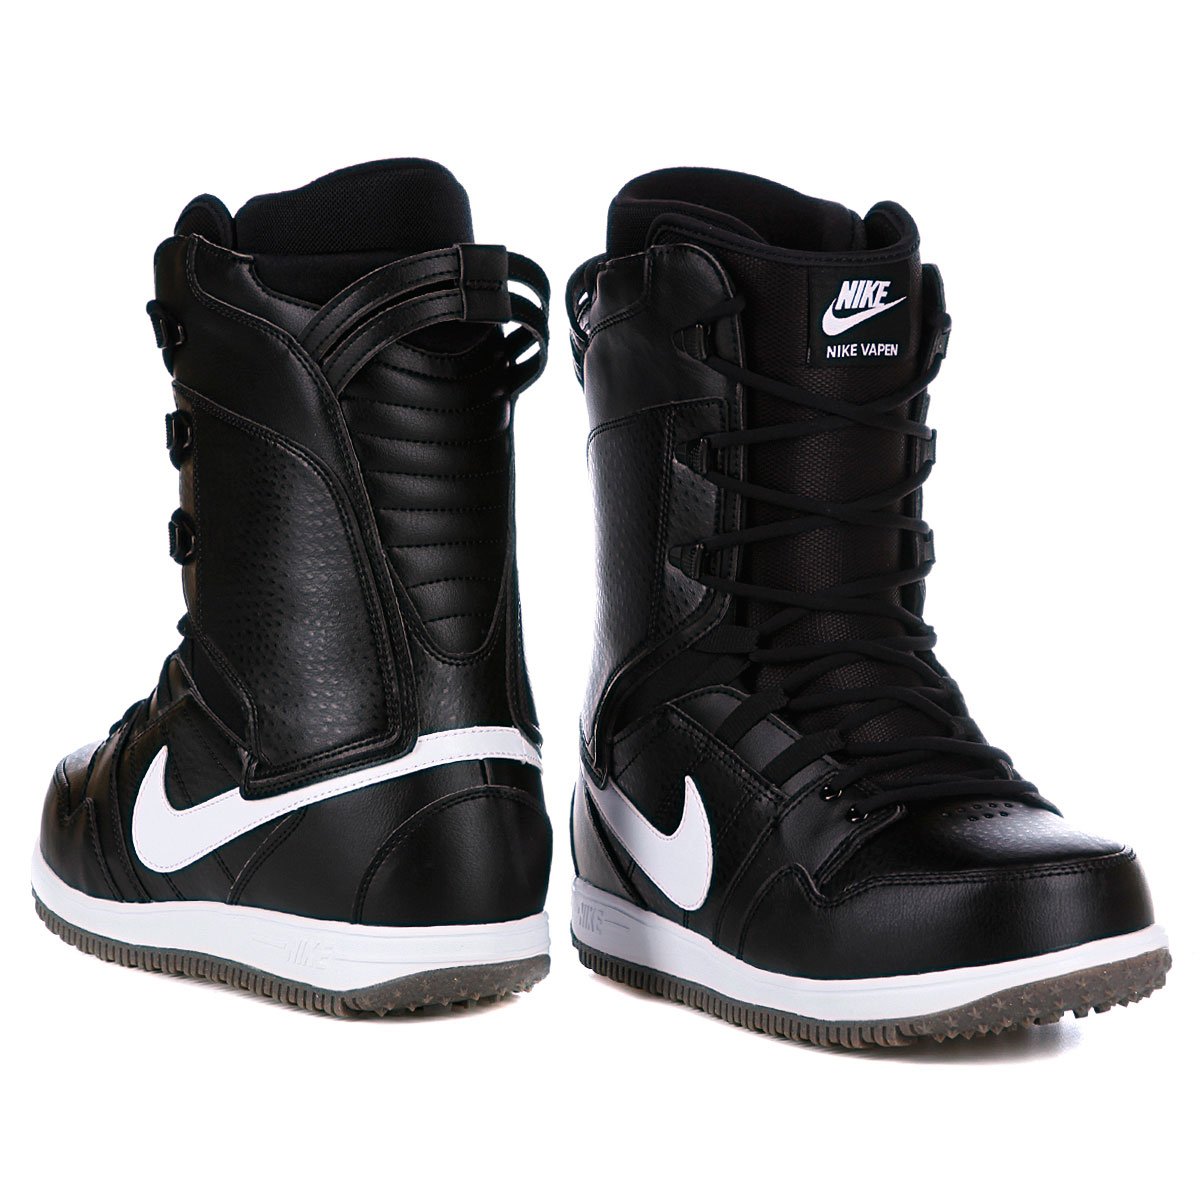 Сноубордические ботинки Nike vapen